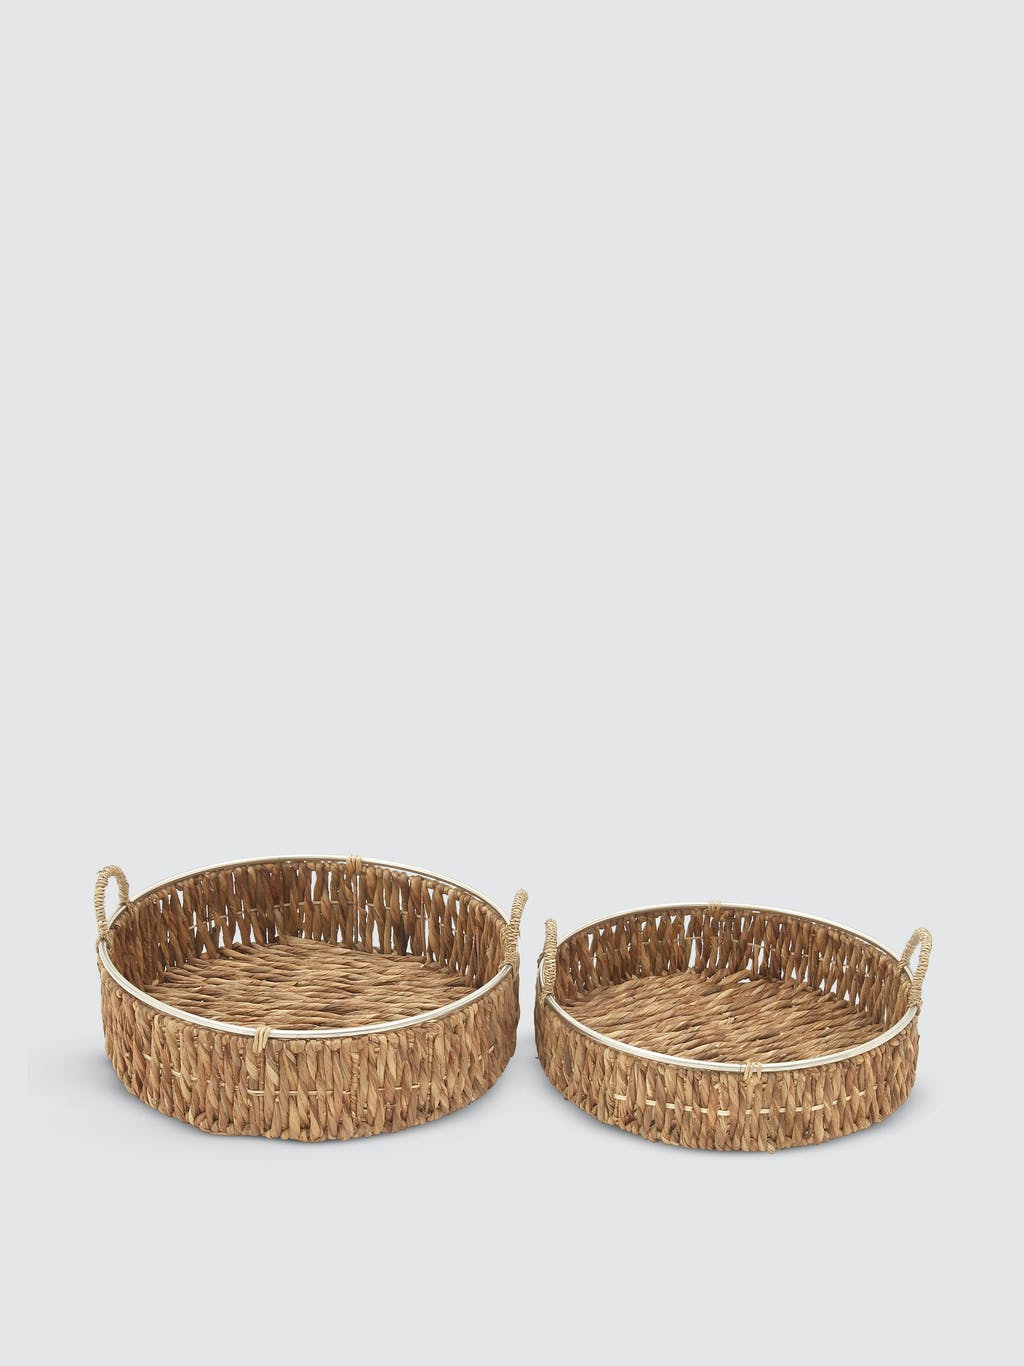 Round Wicker Baskets - Set Of 2